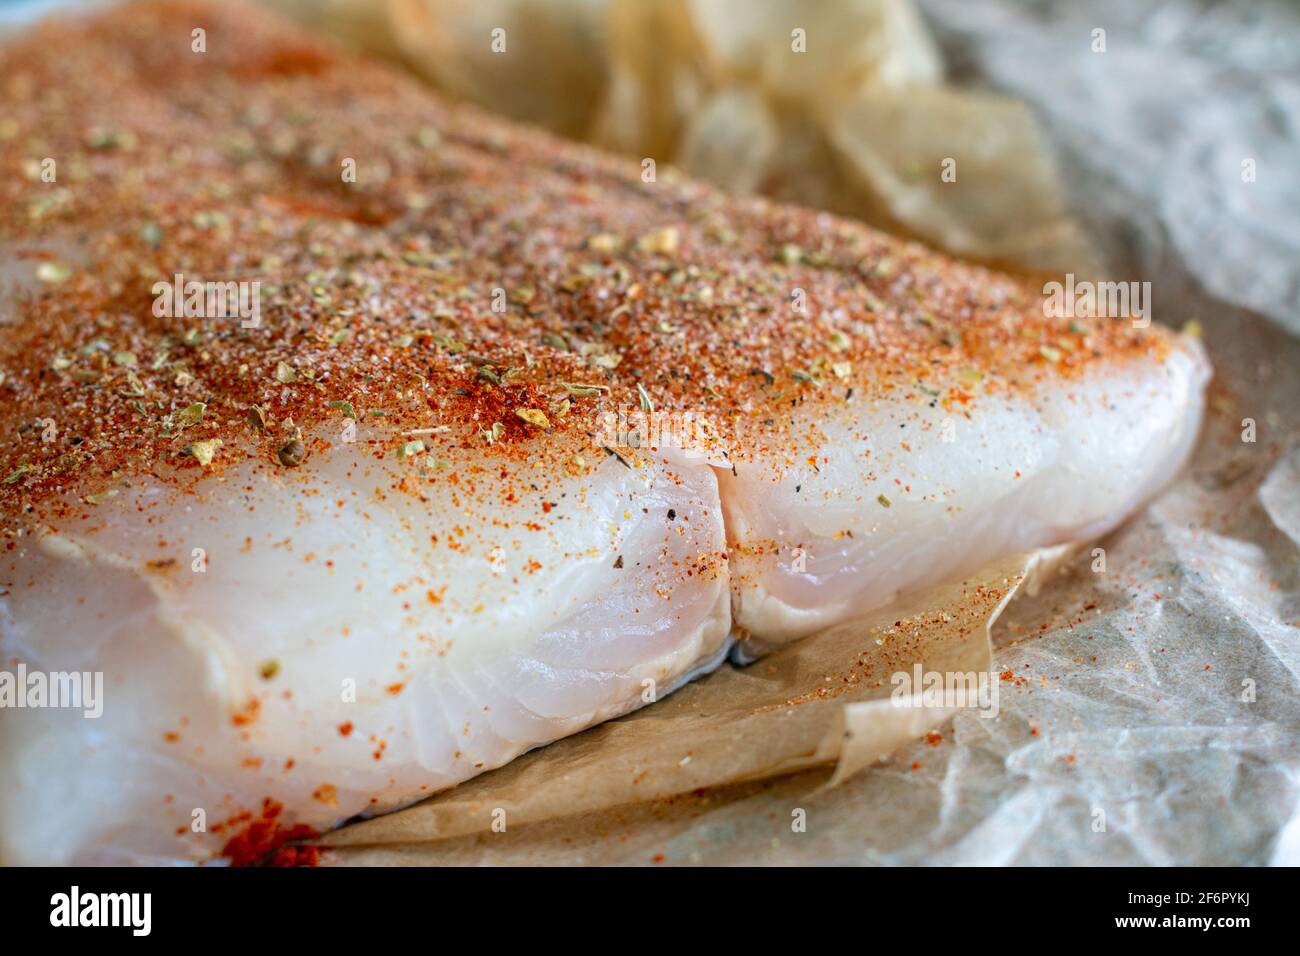 Rohes Halibut-Filet mit dem Gewürzrub von cajun: Ein ungekochtes Fischfilet, das mit Gewürzen eingerieben wurde Stockfoto